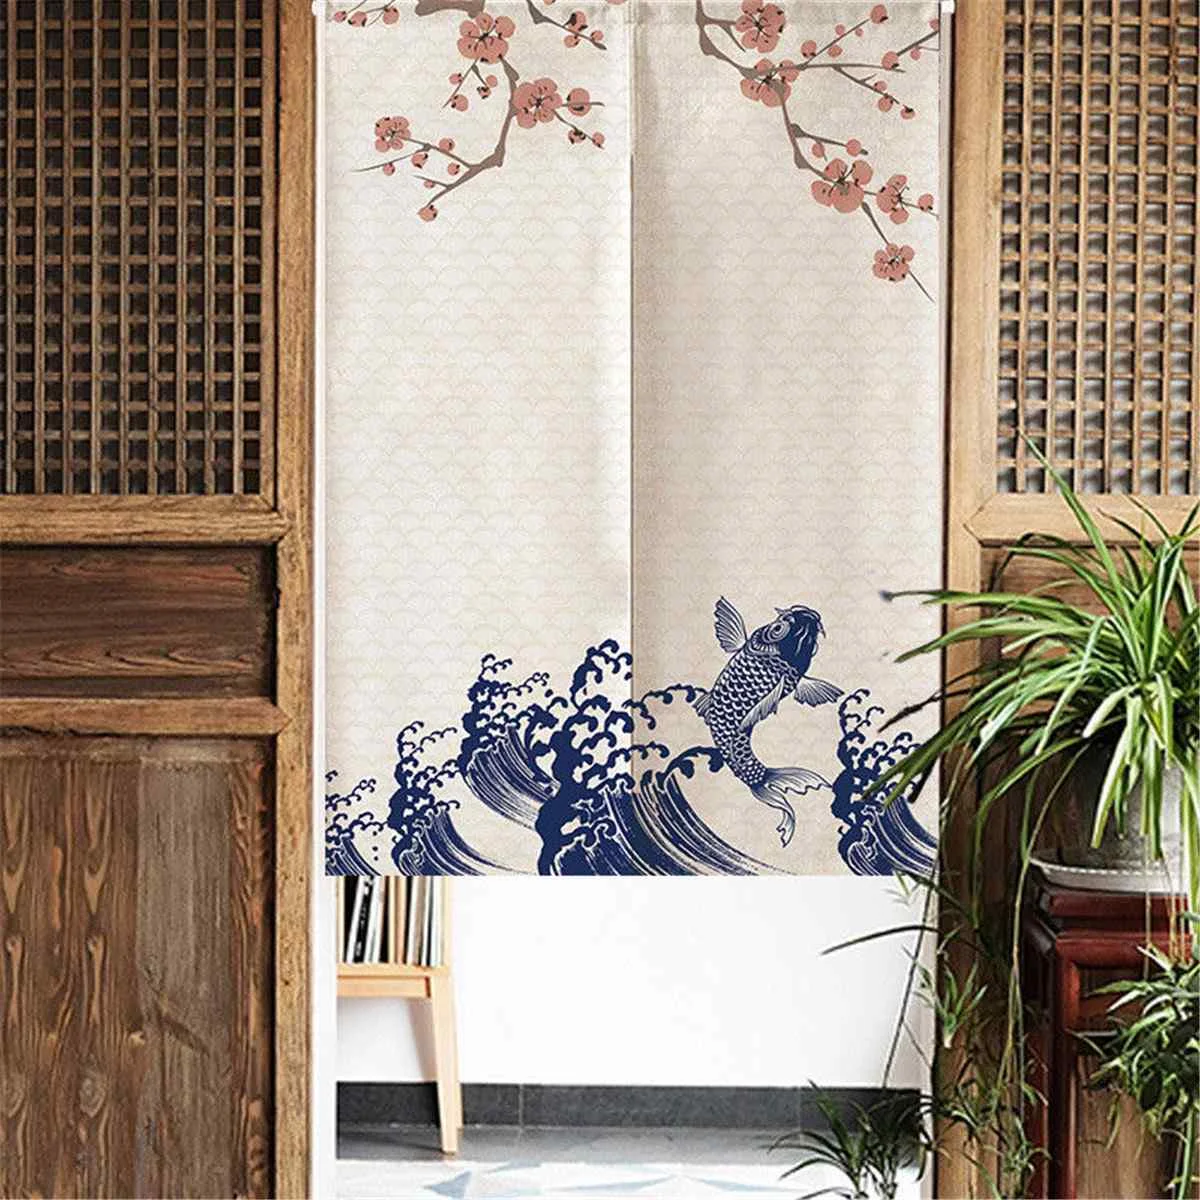 Японская норенская дверная занавеска романтическая цветущая вишня гобелен кухонная занавеска s 85X150 см домашняя декоративная занавеска на дверь